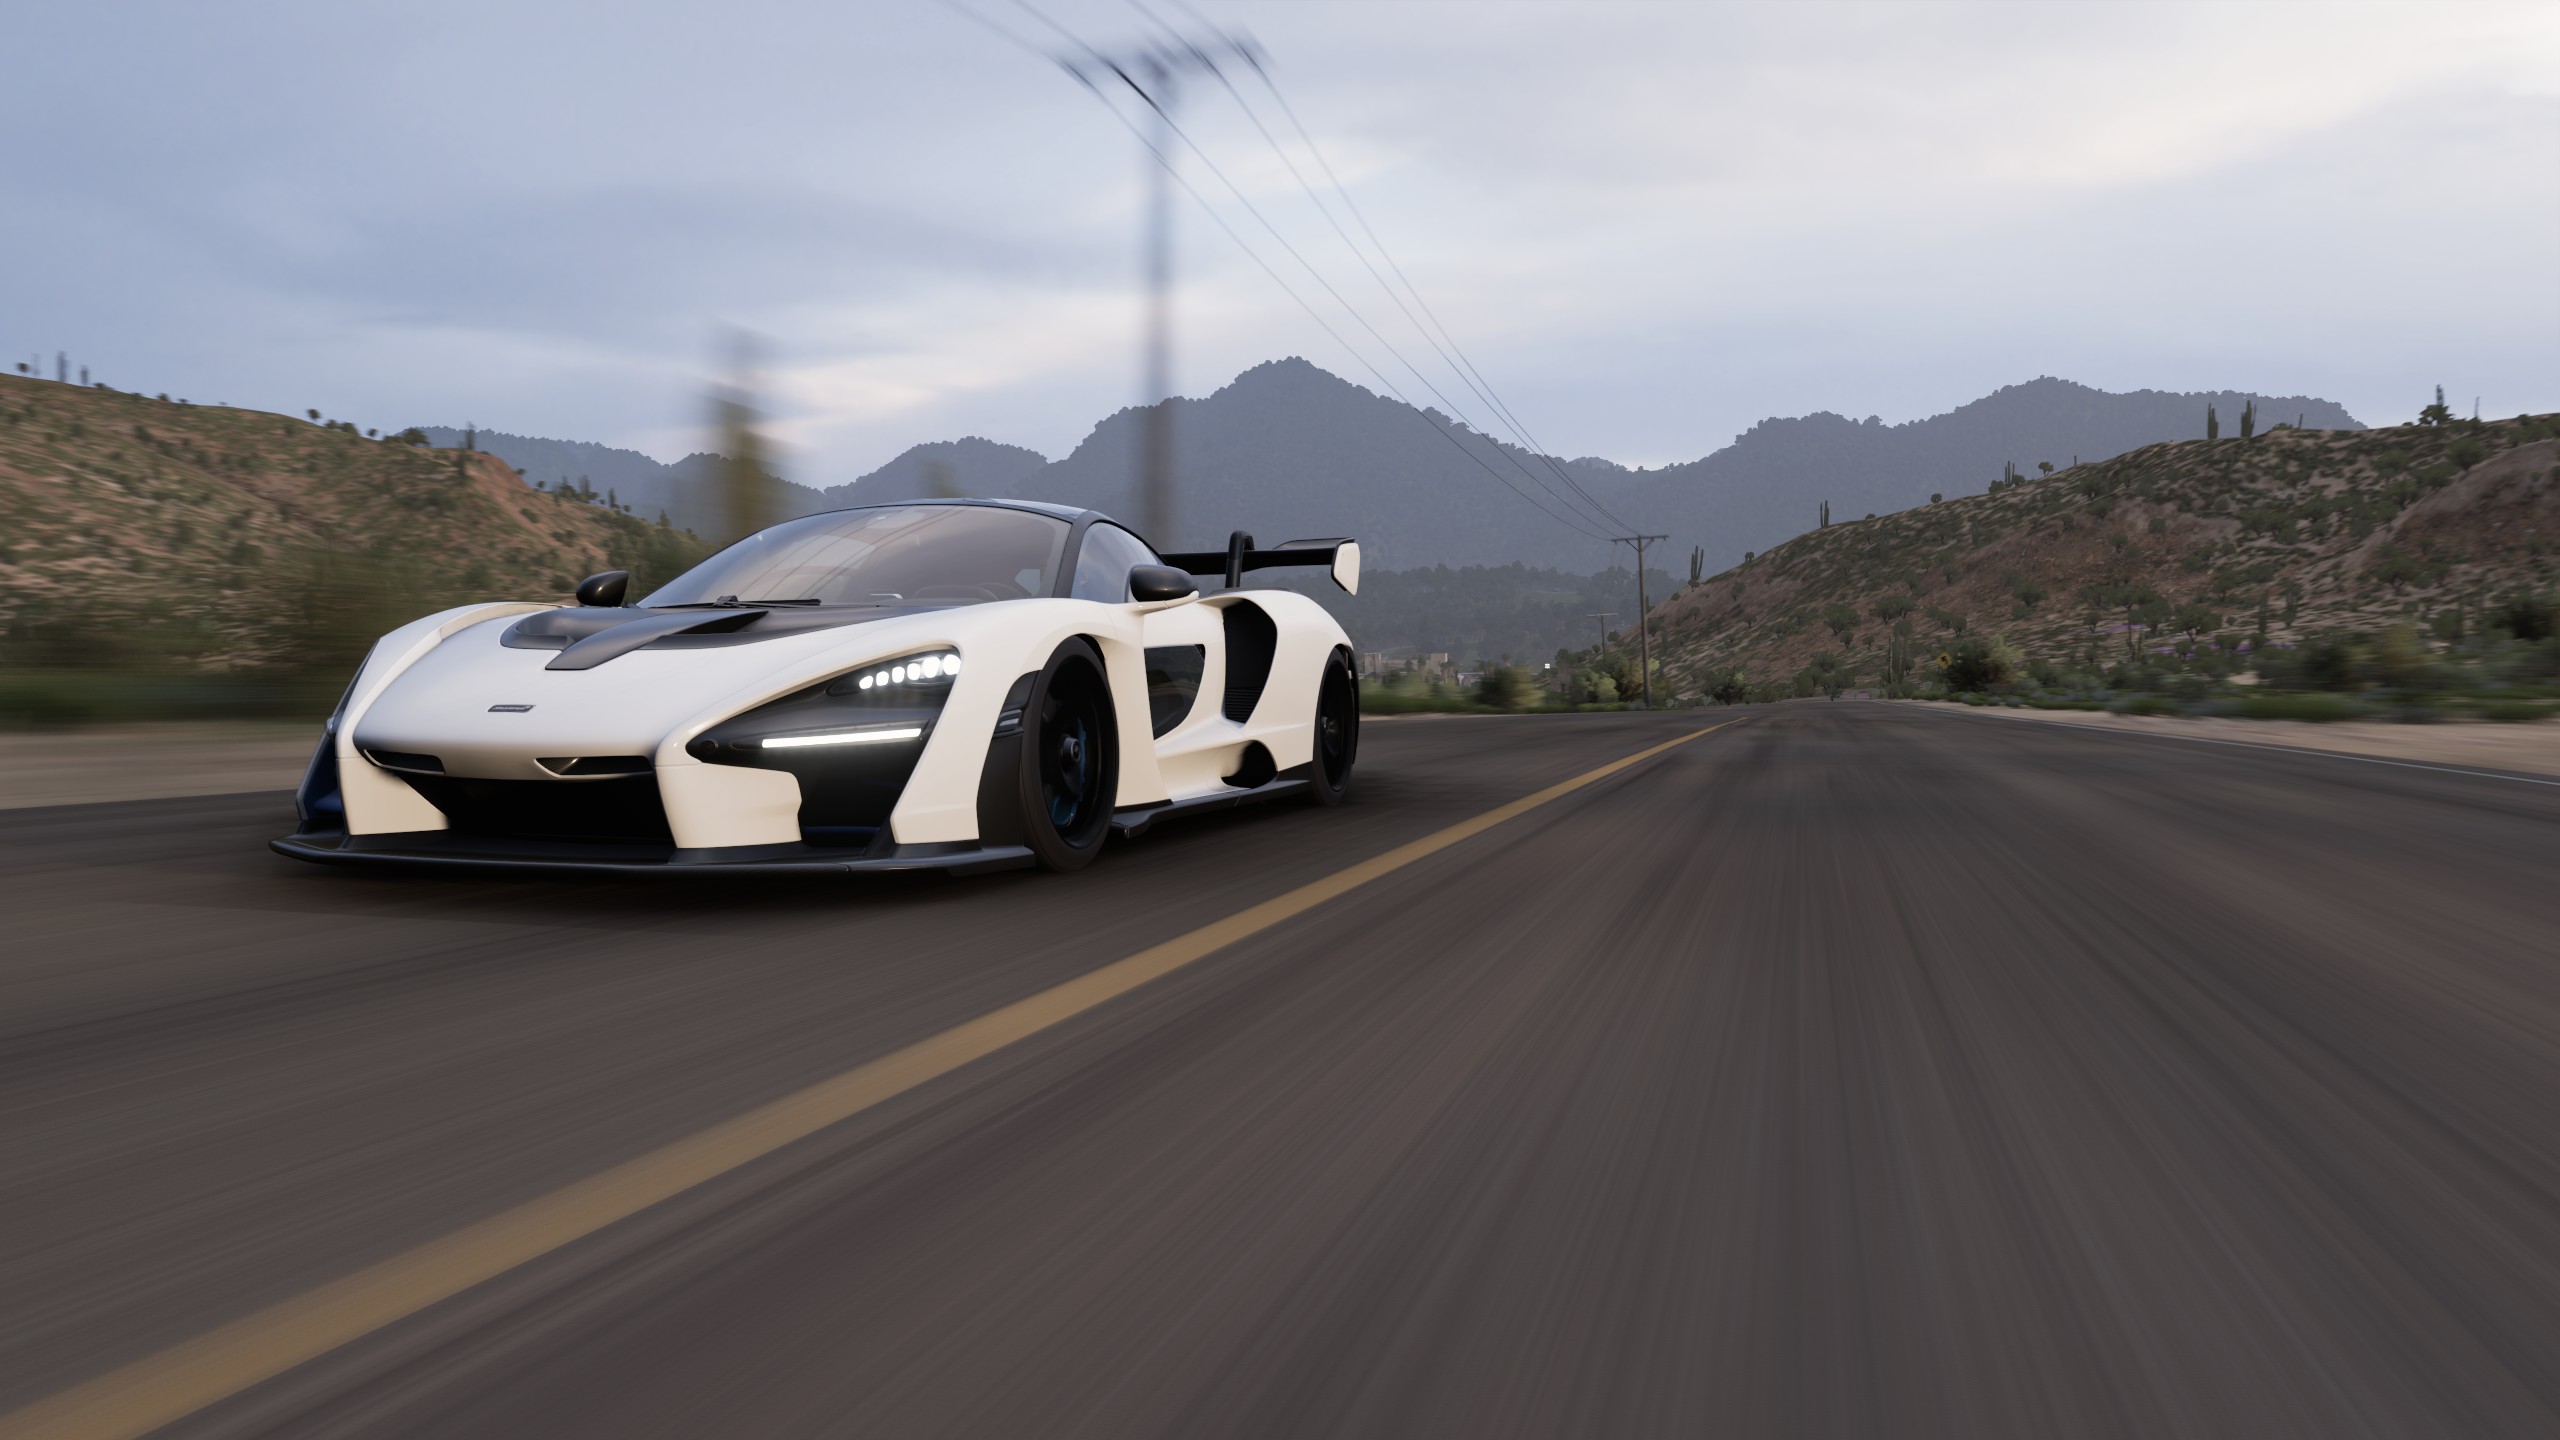 General 2560x1440 Forza Horizon 5 car racing screen shot Mexico video games